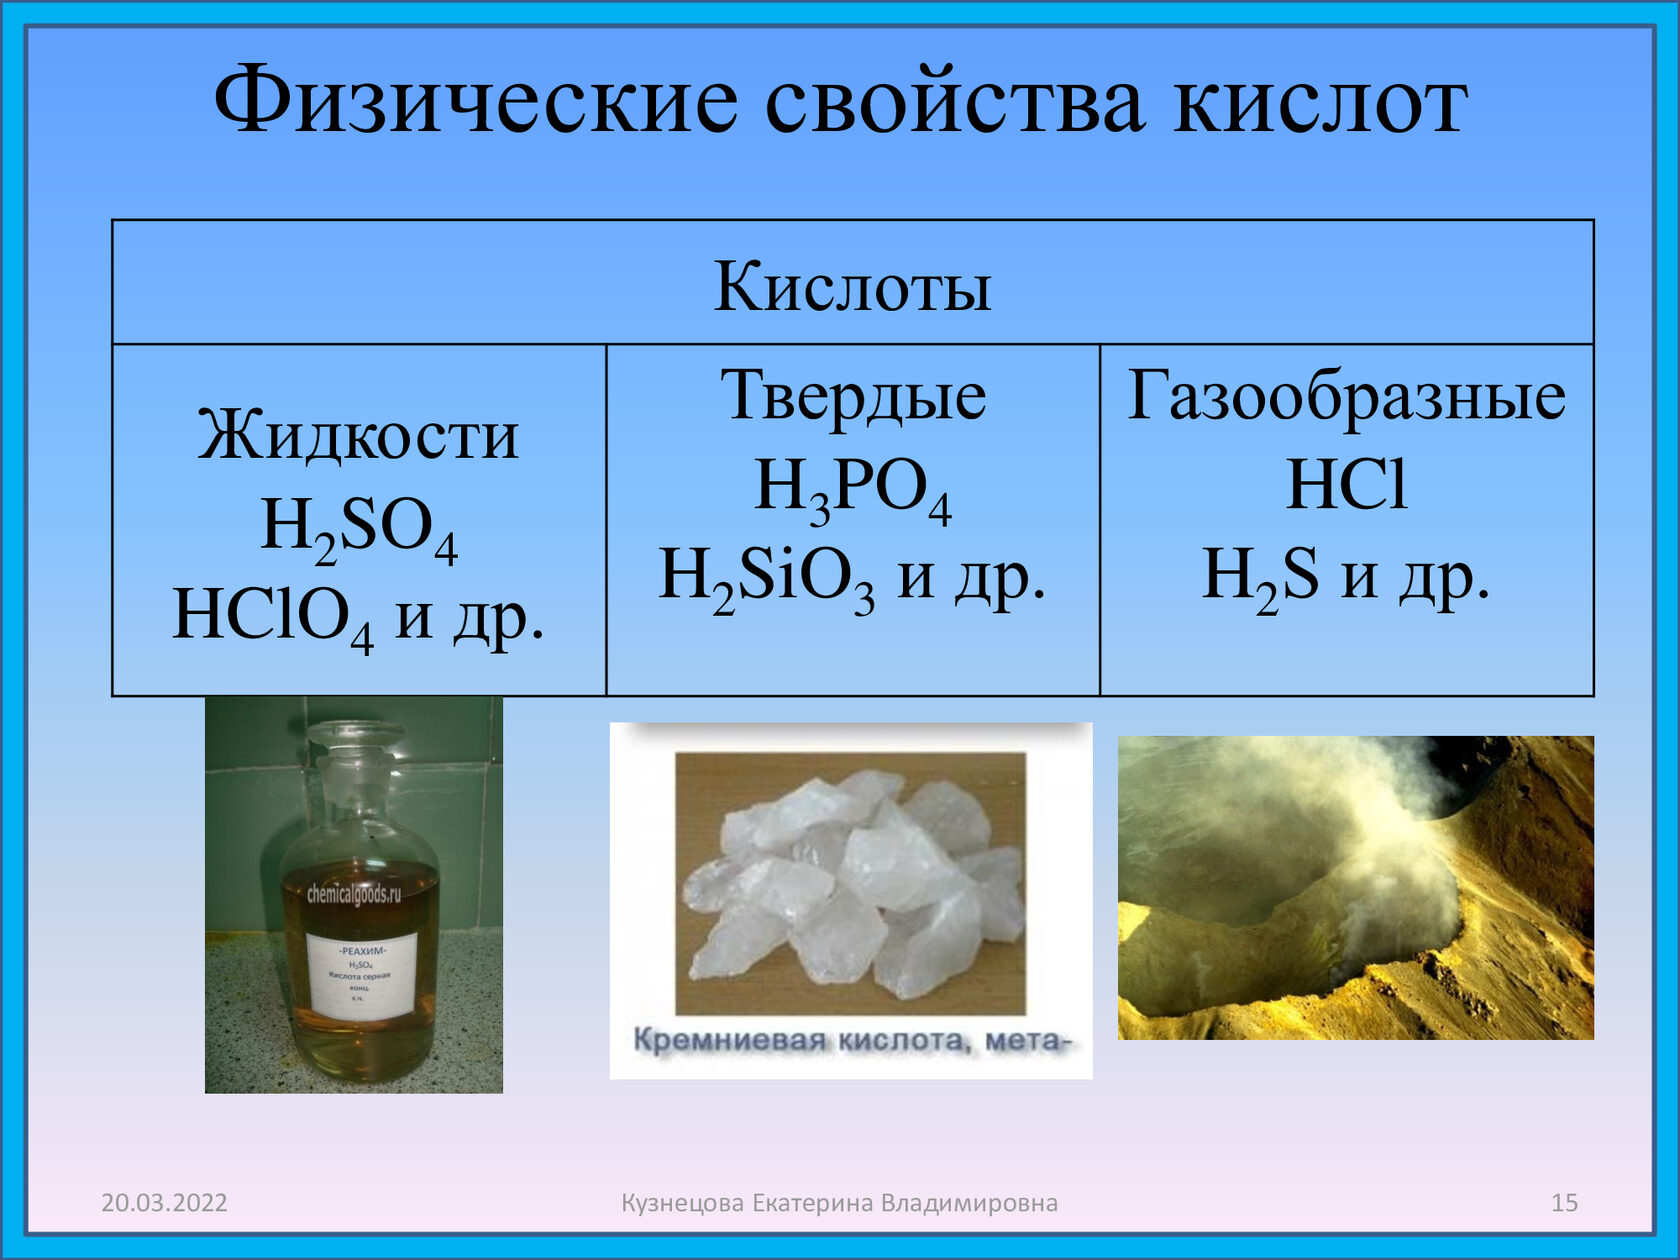 Серная кислота вещество и класс соединений. Физические св-ва кислот. Физические свойства кислот. Физические свойства кислот химия. Физ свойства кислот.